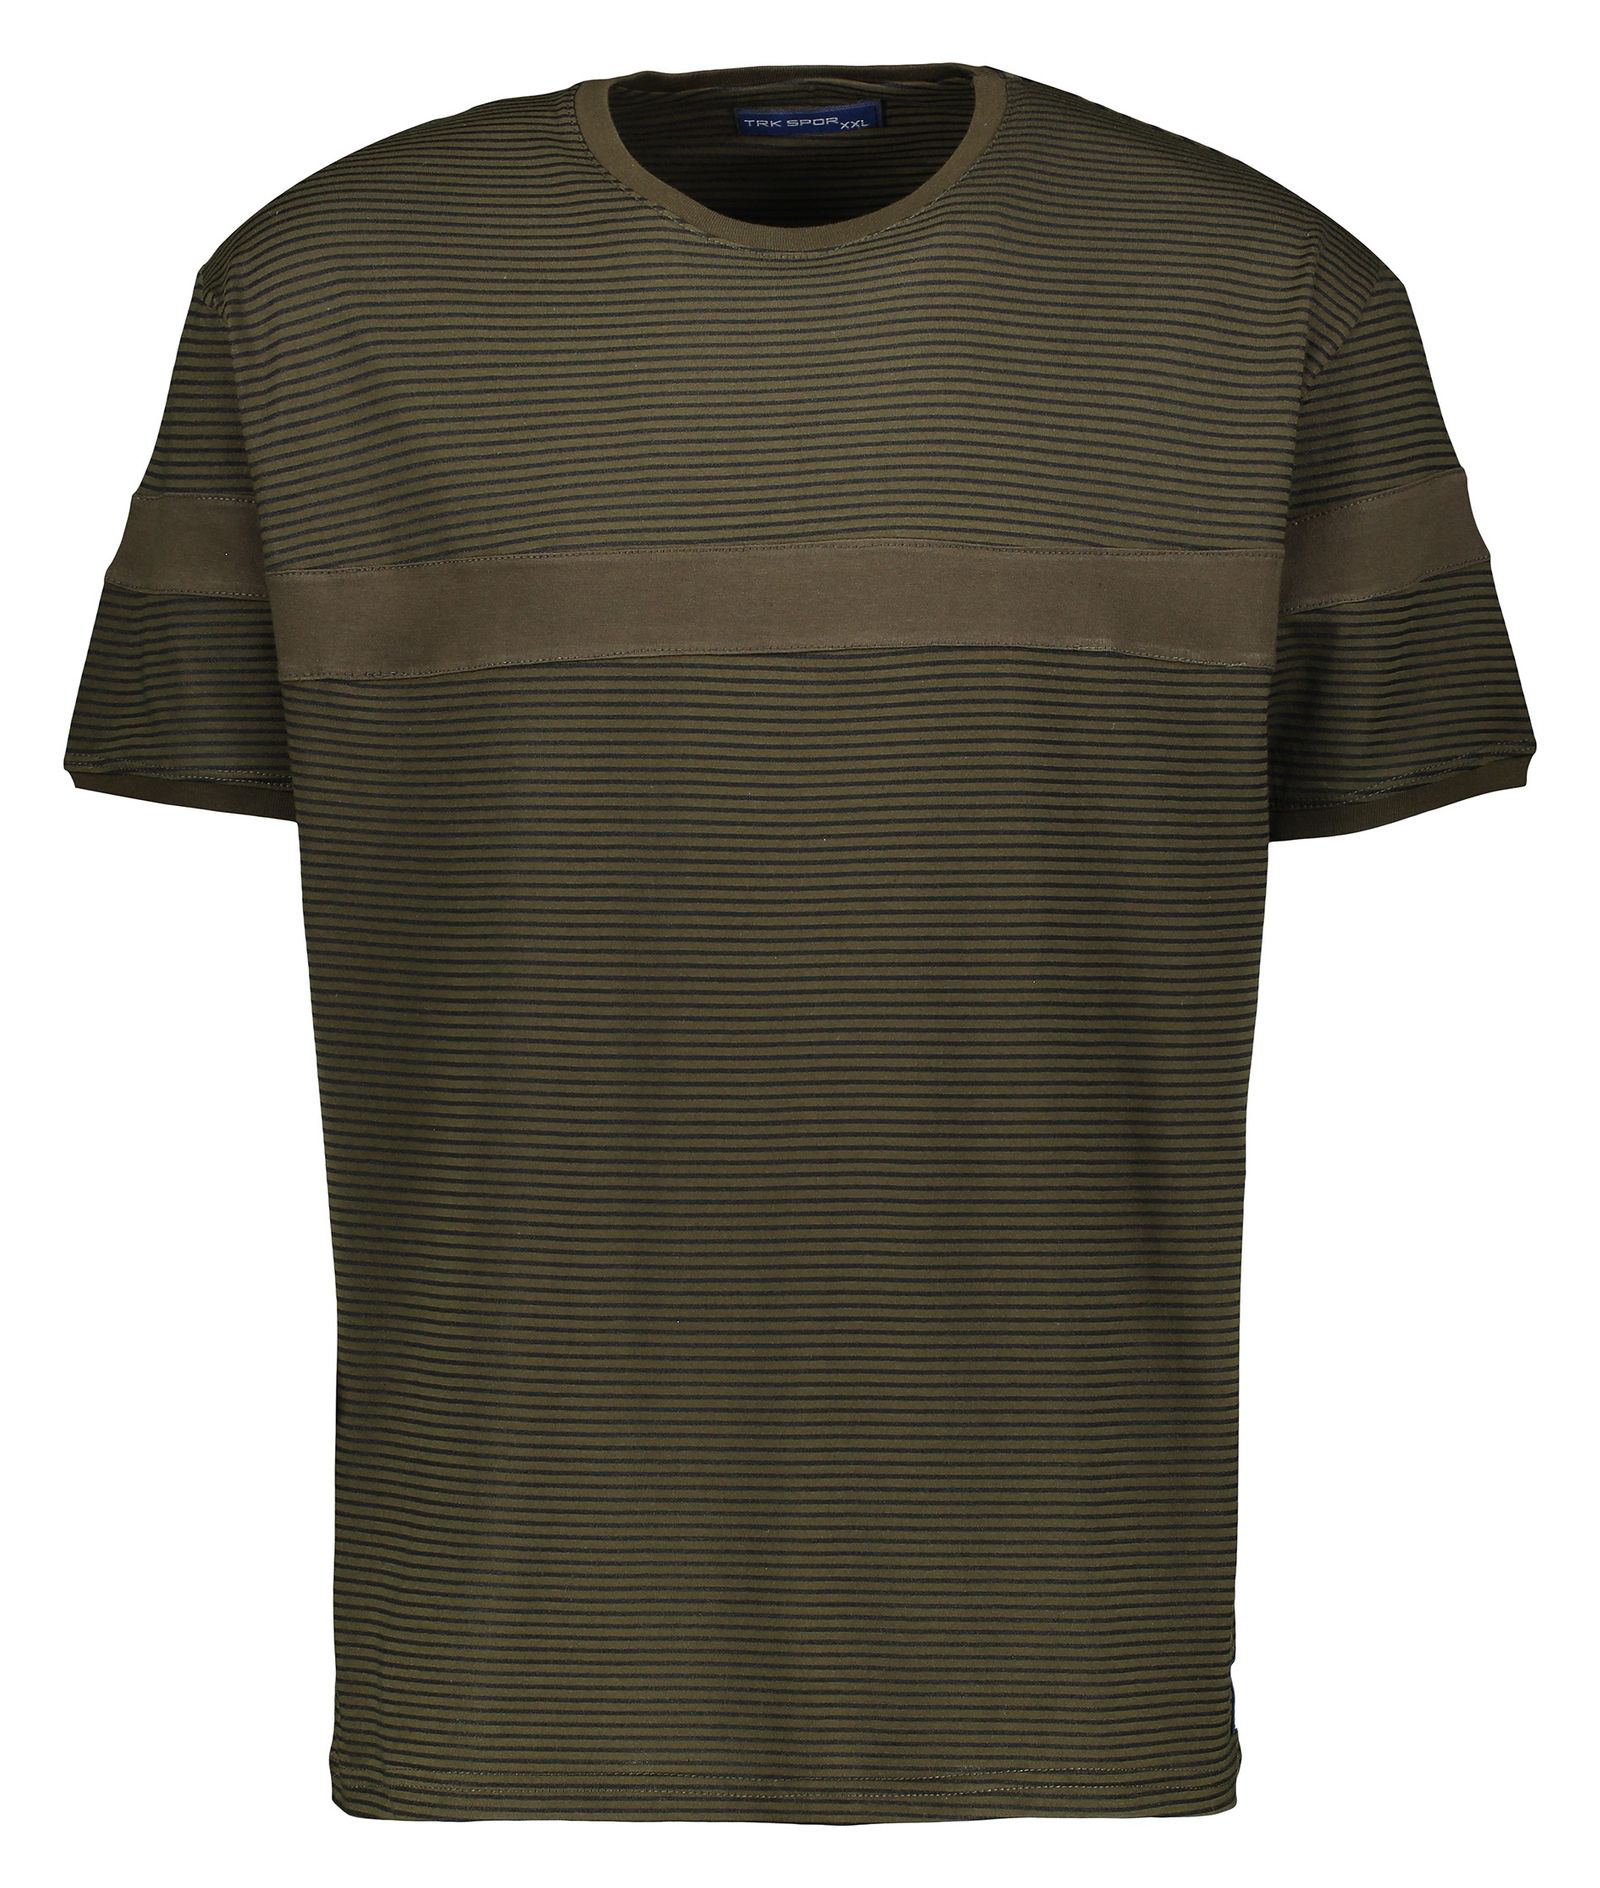 تی شرت آستین کوتاه مردانه تارکان مدل 337-3 btt -  - 1